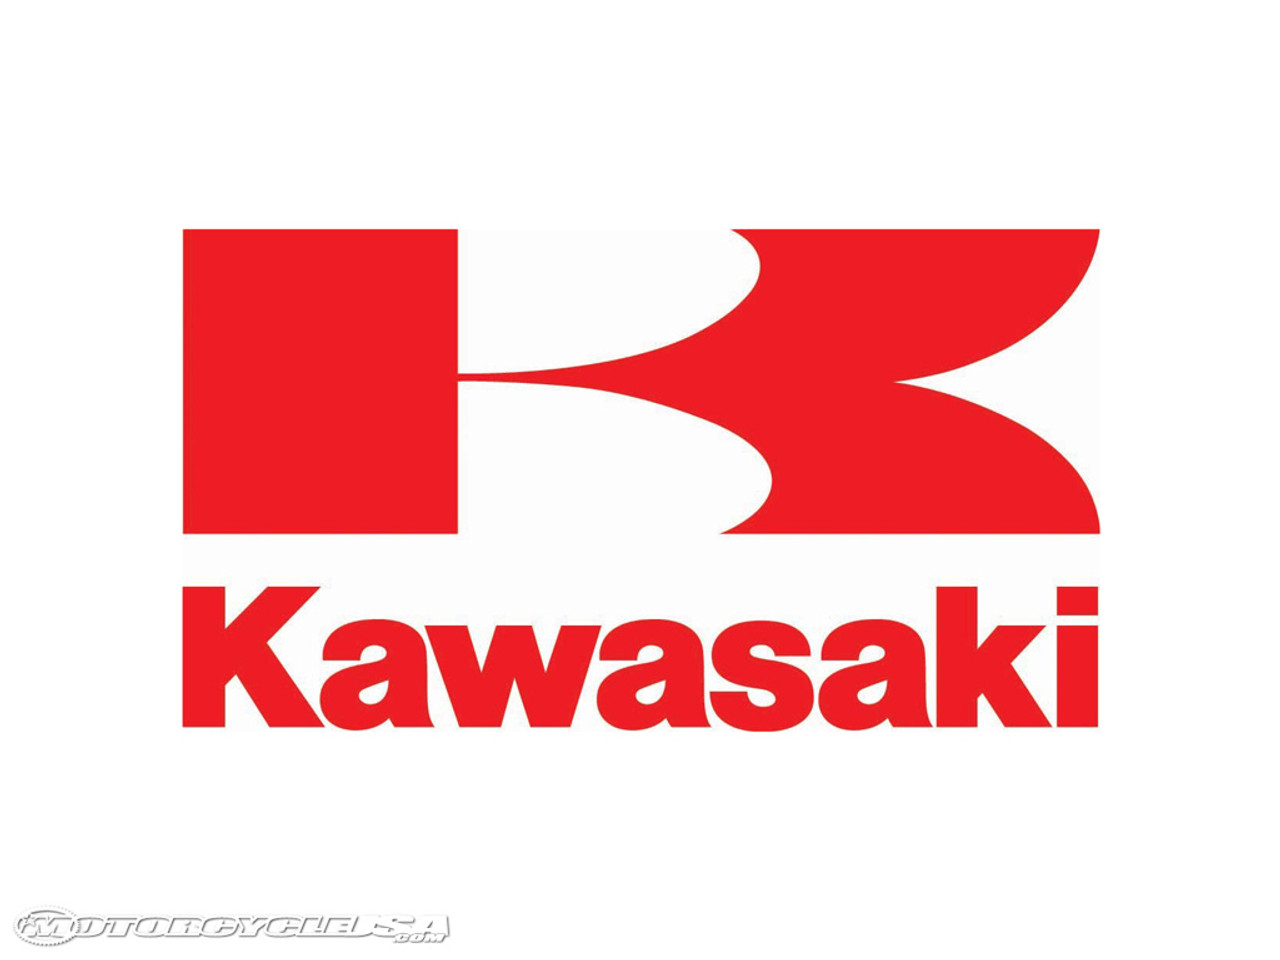 Kawasaki 11061-0847 Gasket